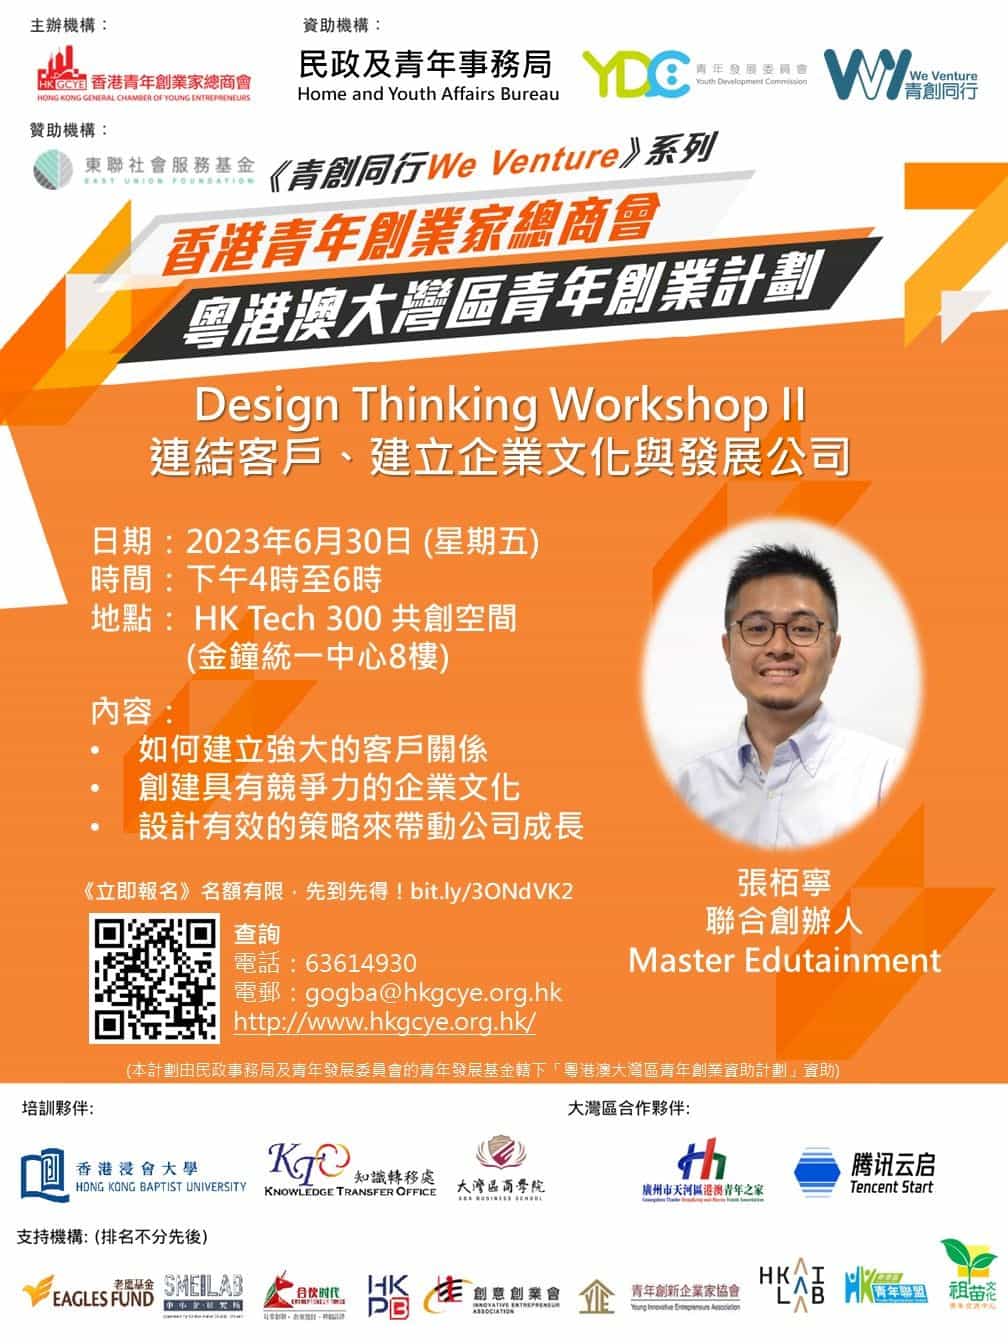 香港青年創業家總商會 - Design Thinking Workshop II《連結客戶、建立企業文化與發展公司》